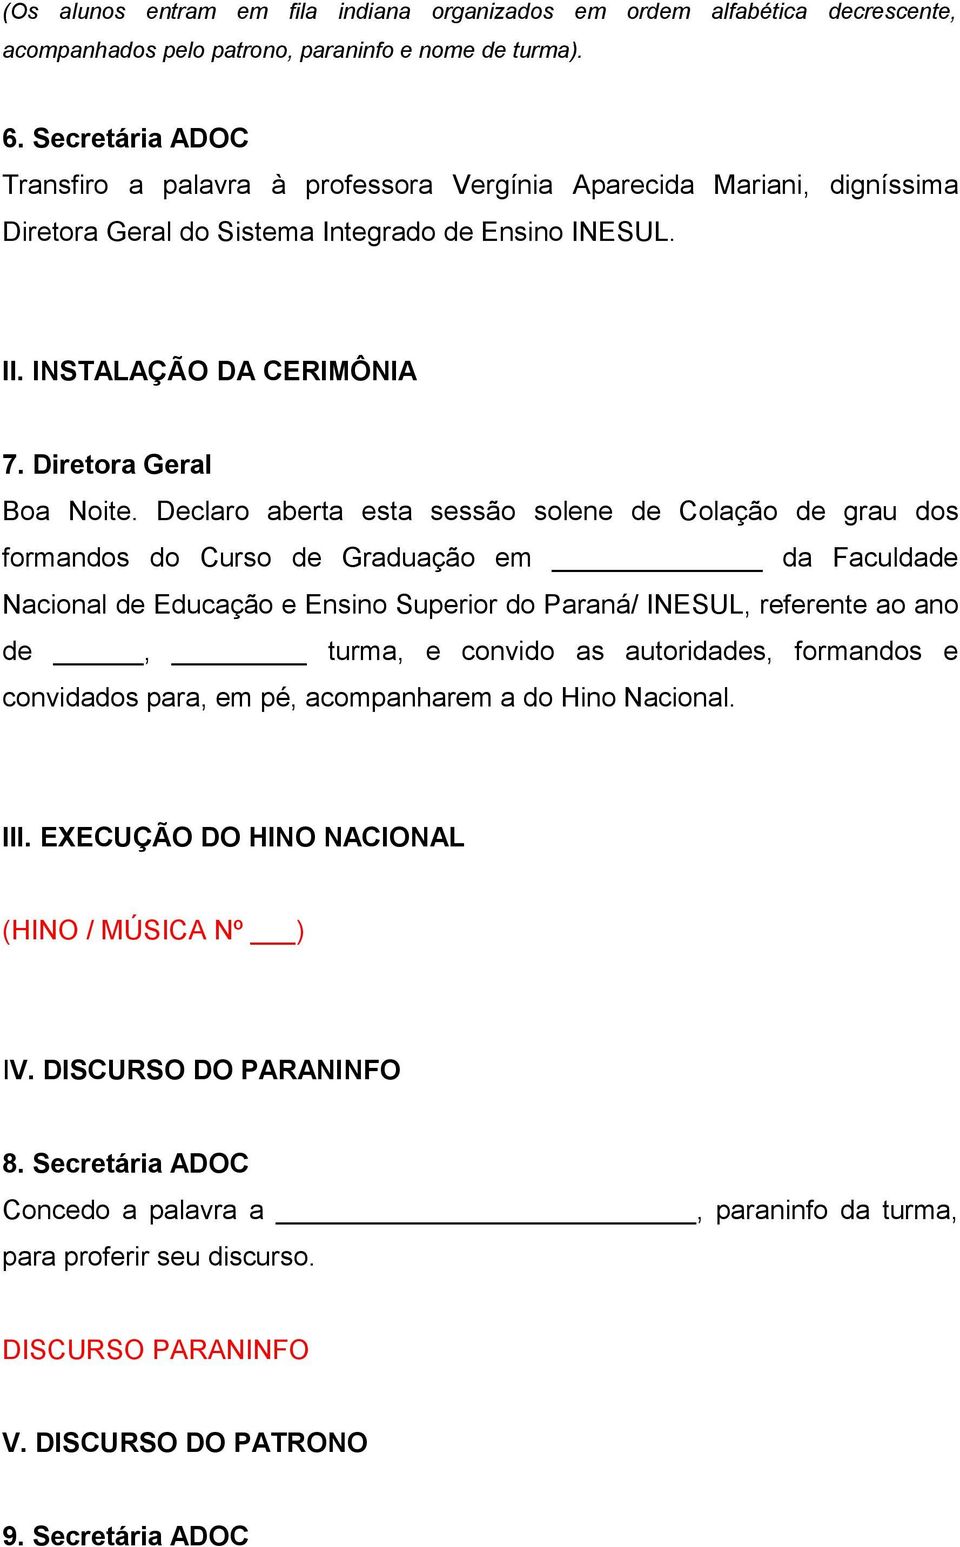 Declaro aberta esta sessão solene de Colação de grau dos formandos do Curso de Graduação em da Faculdade Nacional de Educação e Ensino Superior do Paraná/ INESUL, referente ao ano de, turma, e